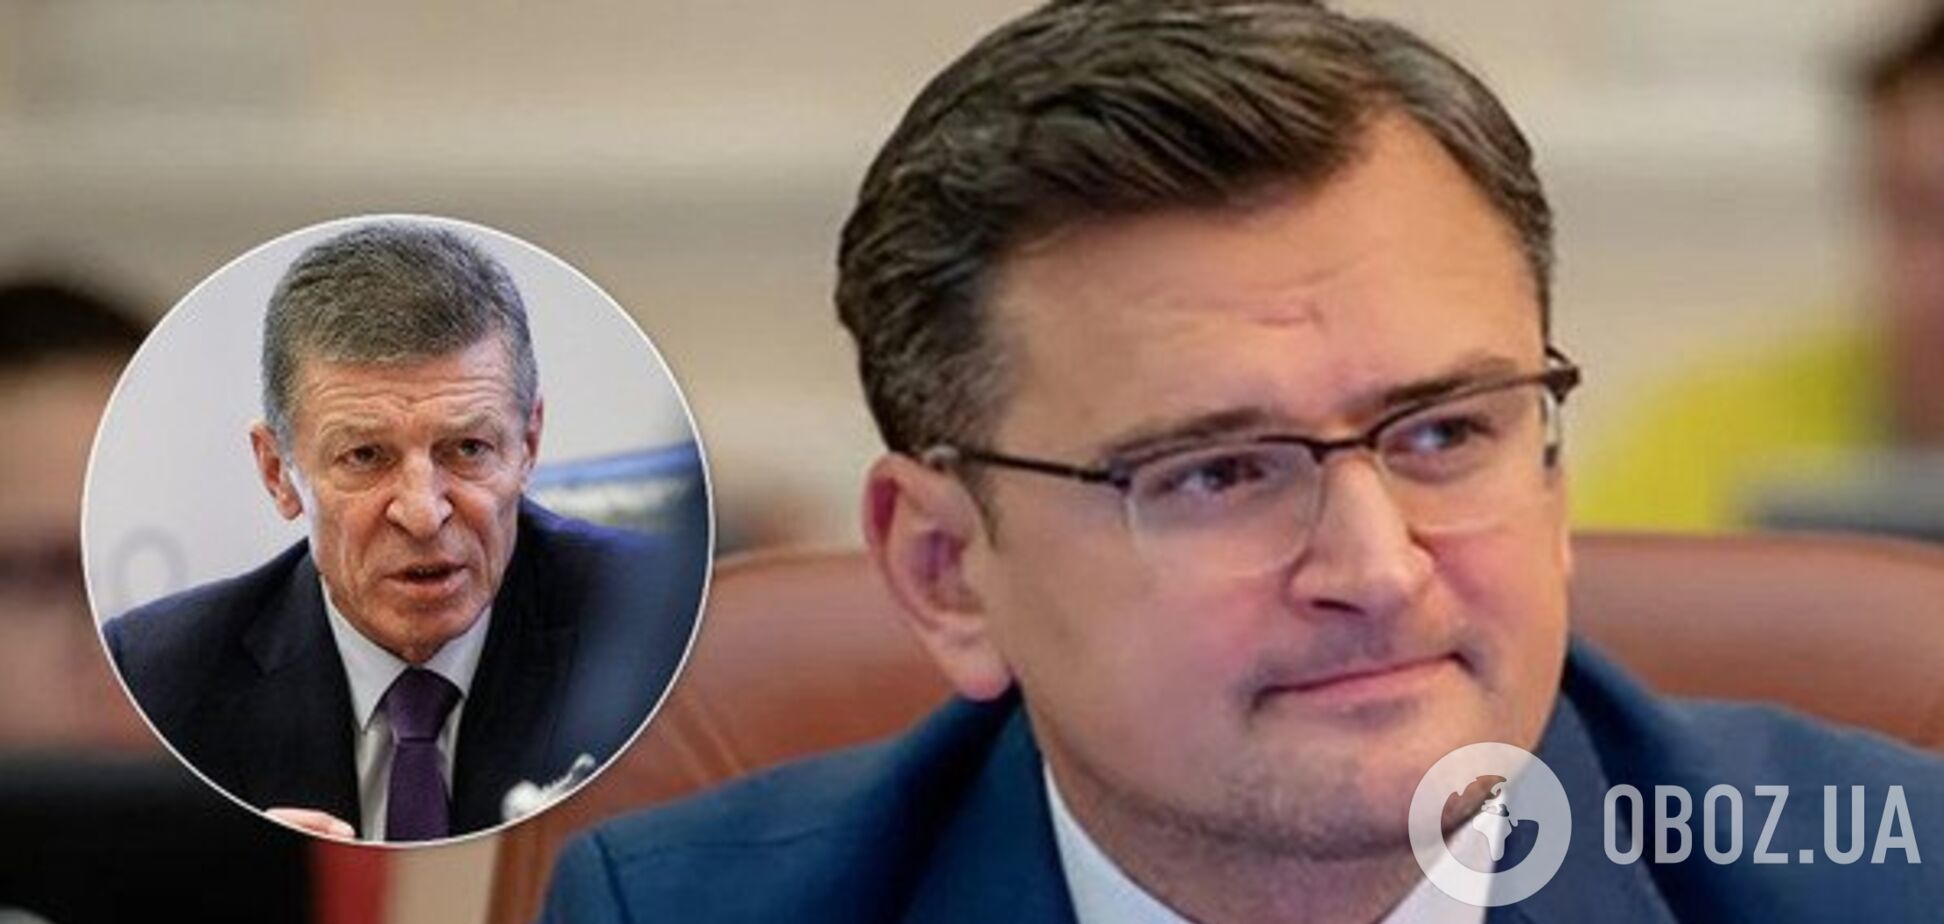 Переговоры по Донбассу за спиной Украины: Кулеба объяснил скандал